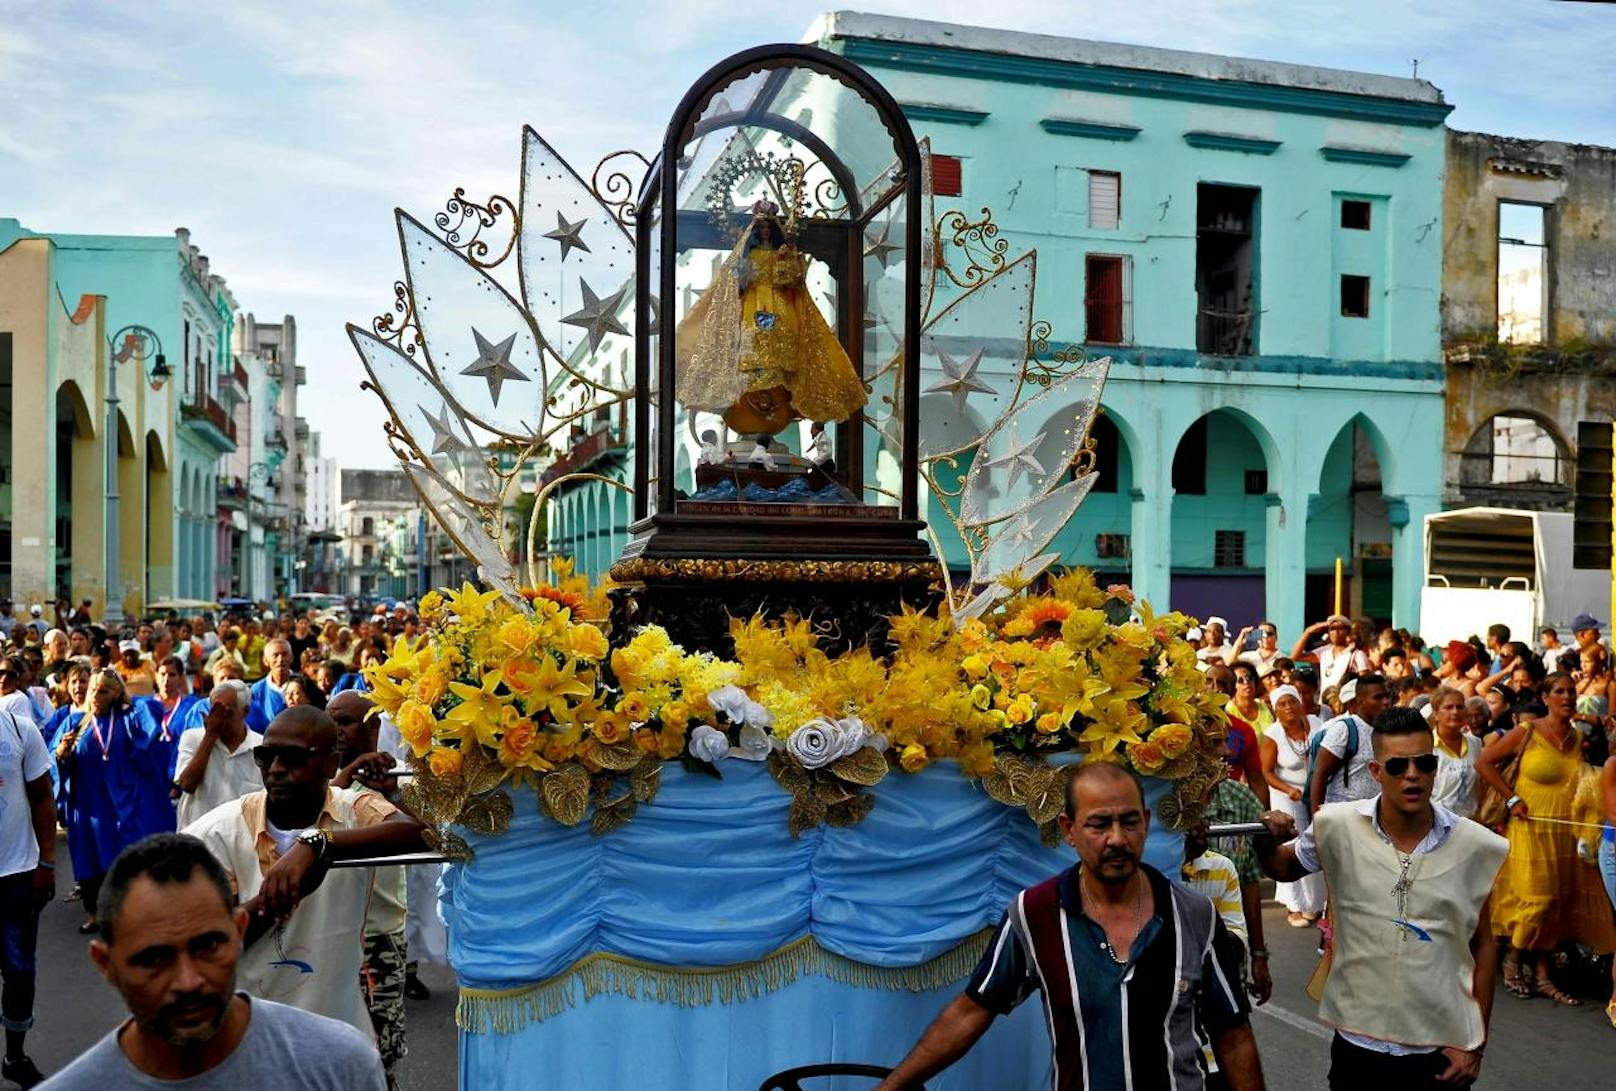 Kubaner beten zu Landesheiliger: Mit einer Prozession zu Ehren der Barmherzigen Jungfrau von Cobre, der Schutzheiligen Kubas, beten die Kubaner um Schutz vor "Irma". Die hölzerne Heiligenfigur repräsentiert die Jungfrau Maria, deren Geburt am 8. September katholisch gefeiert wird.
